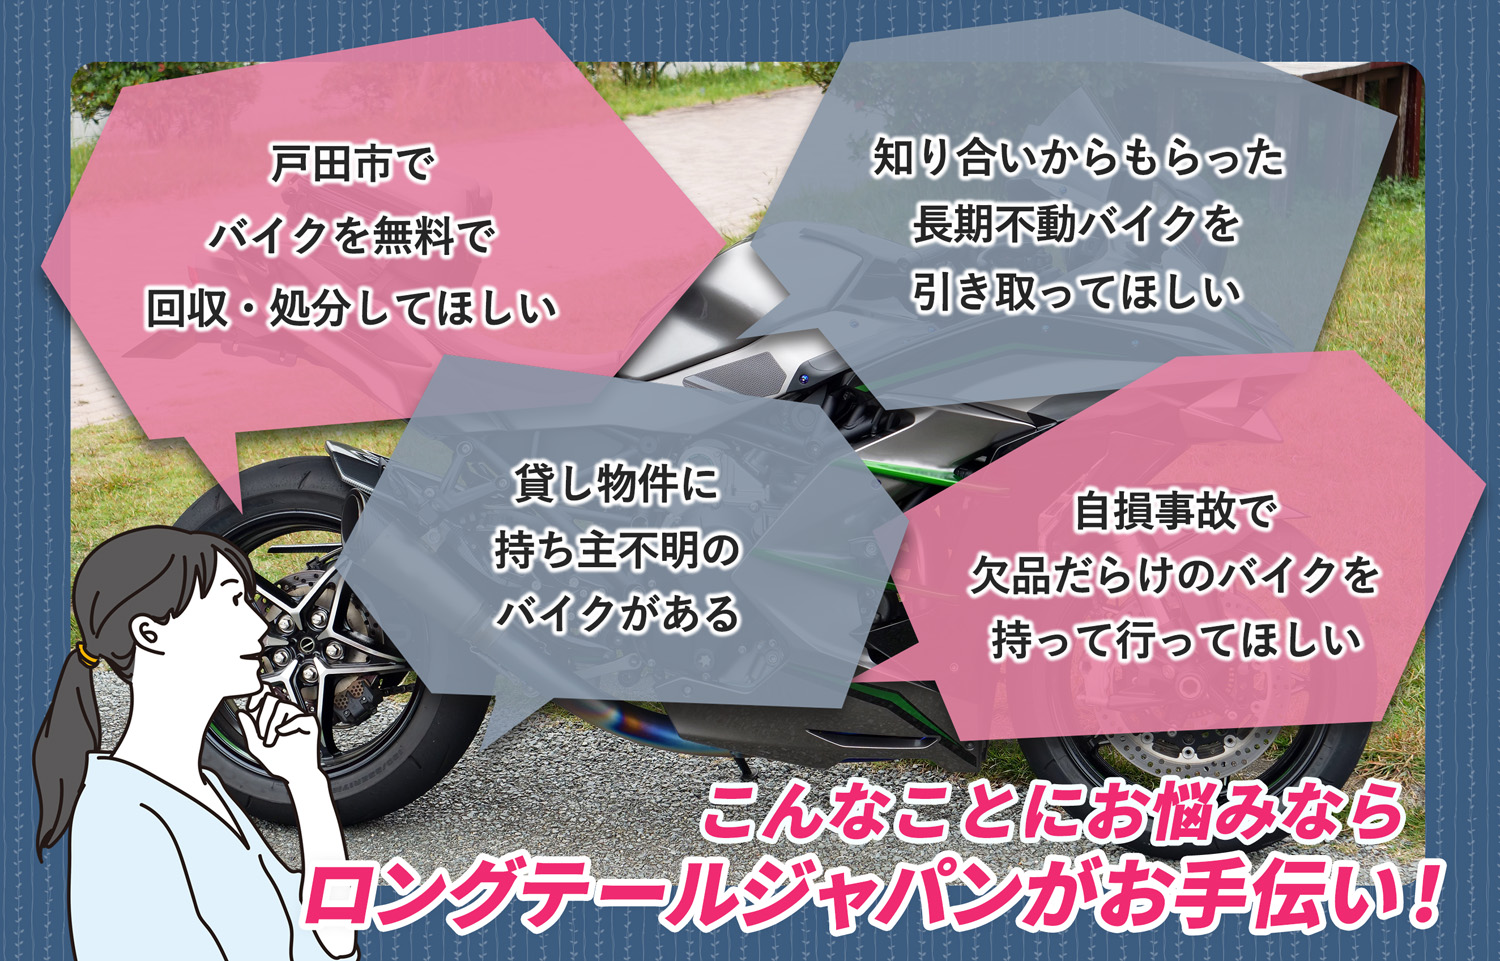 戸田市でこんなバイクの処分にお困りでしたらバイク無料回収処分隊がお手伝いいたします。